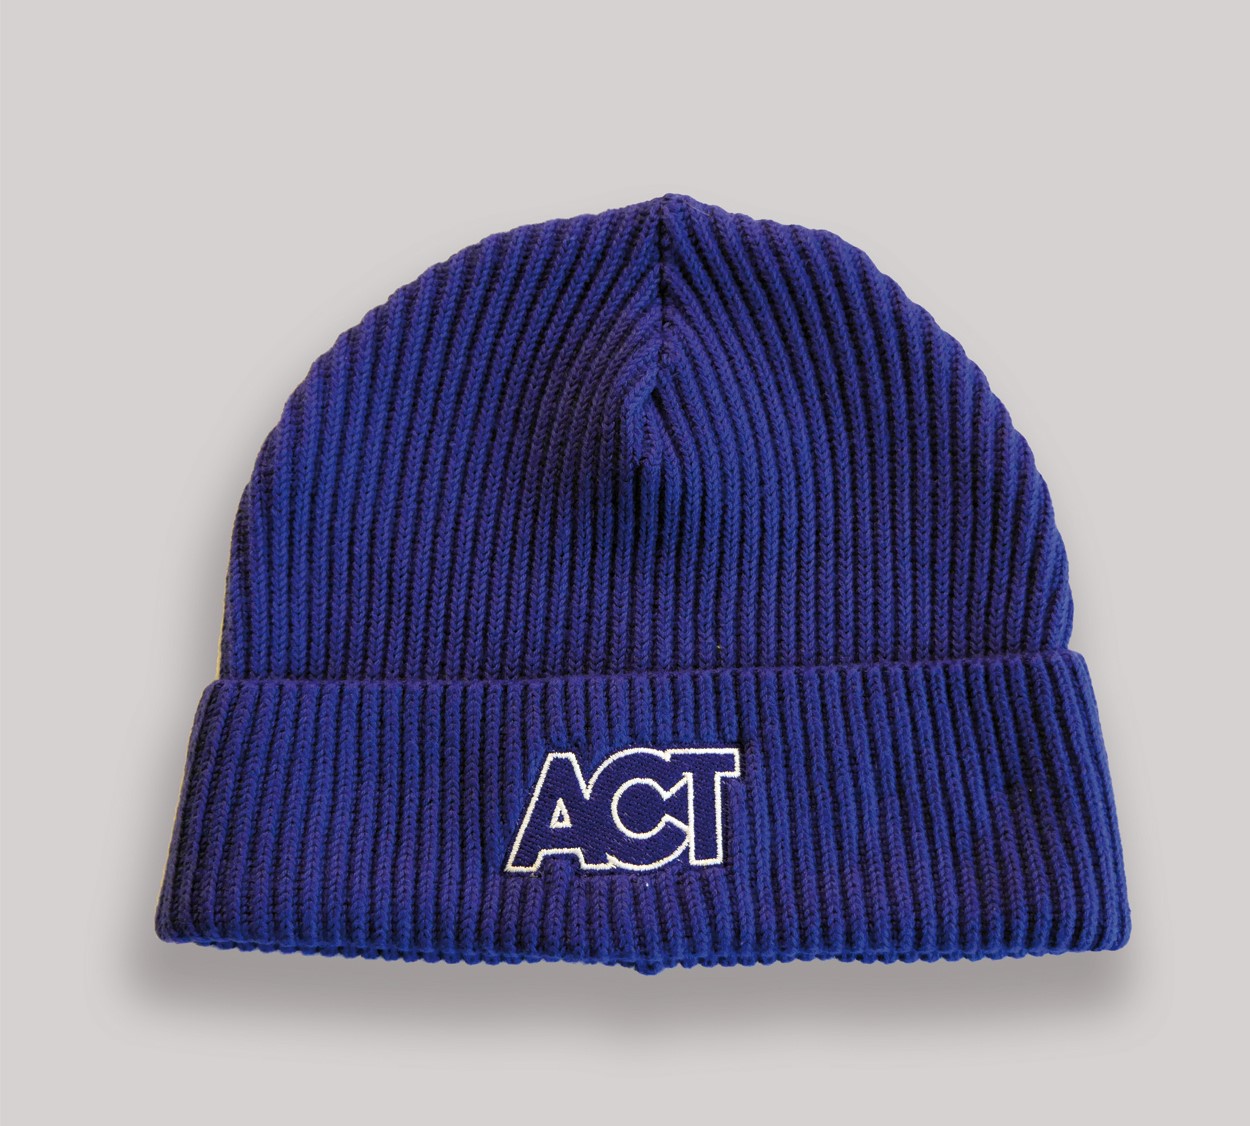 Mütze "ACT"